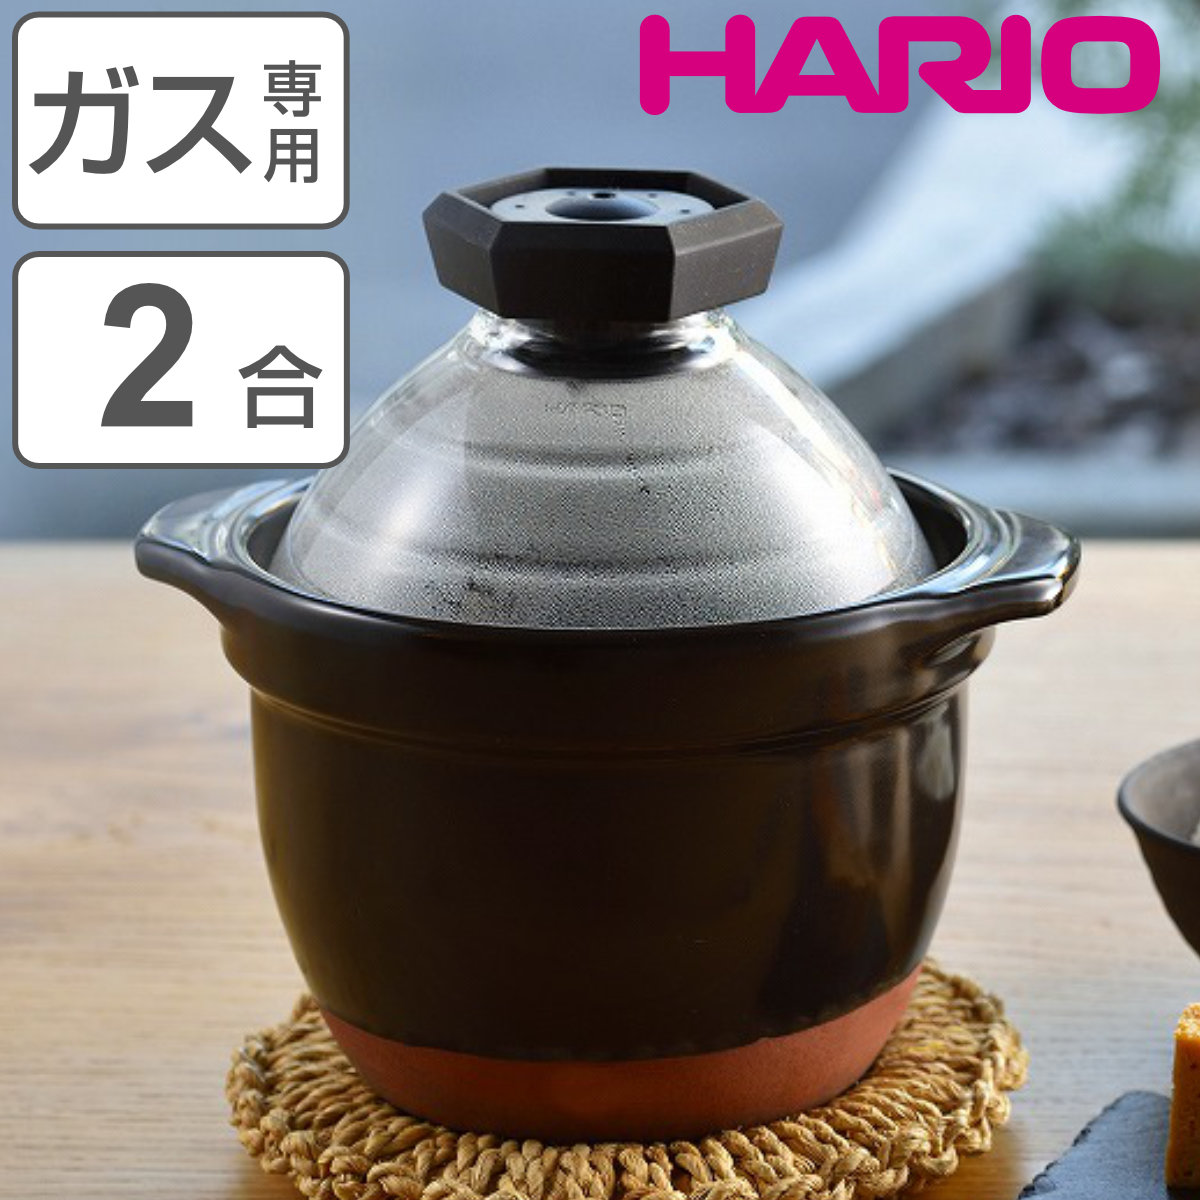 HARIO 炊飯土鍋 2〜3合 直火専用 ガラス蓋付き フタがガラスのご飯 